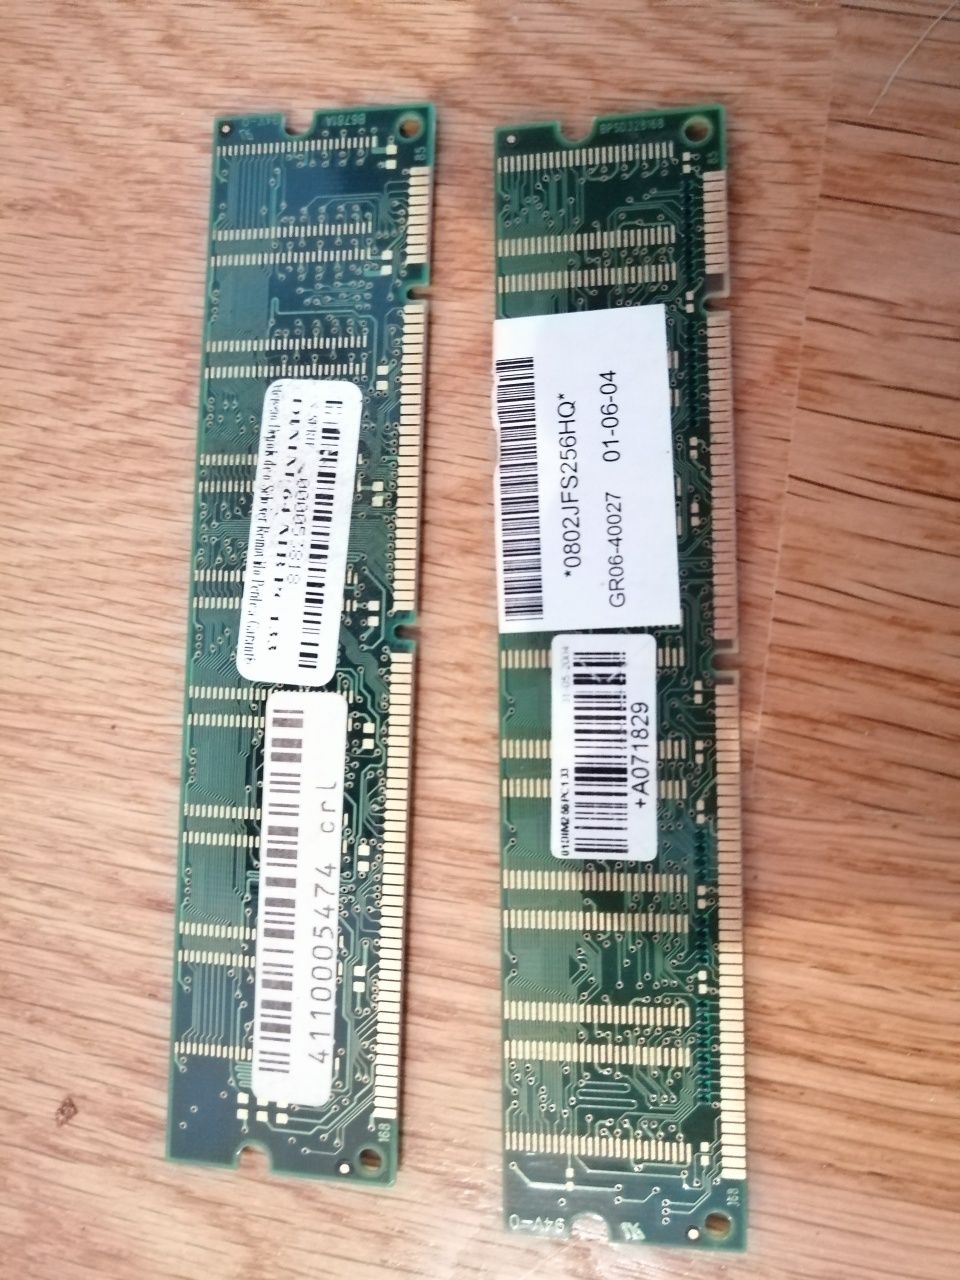 Placas de computador antigo: memória RAM, placa gráfica, de som, modem